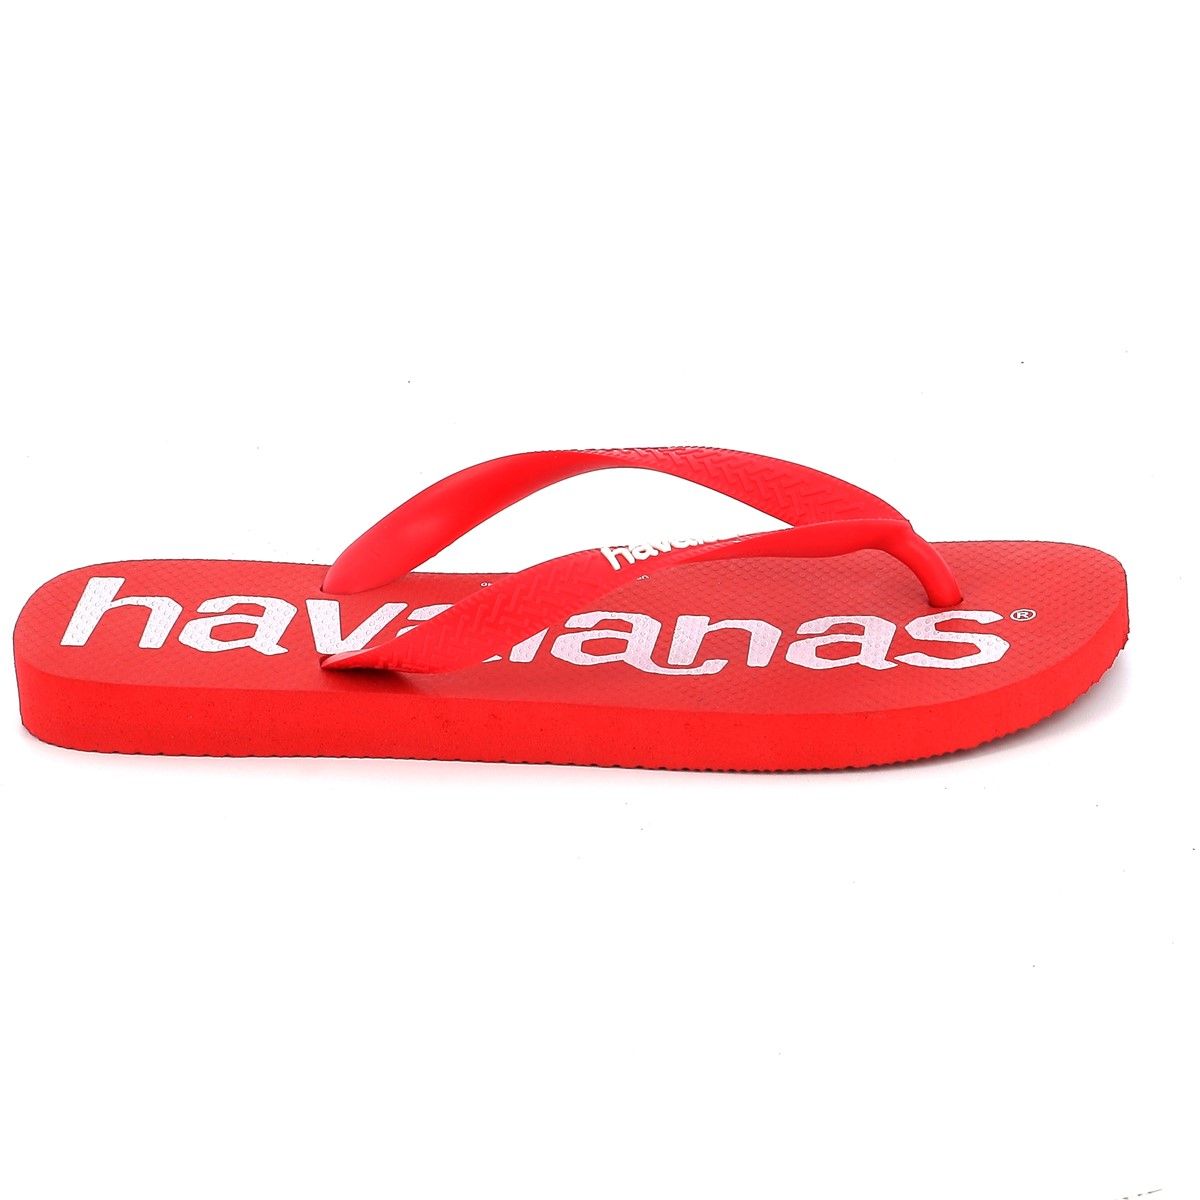 Ανδρική Σαγιονάρα Havaianas Top Logo Mania Χρώματος Κόκκινο 4144264-2090